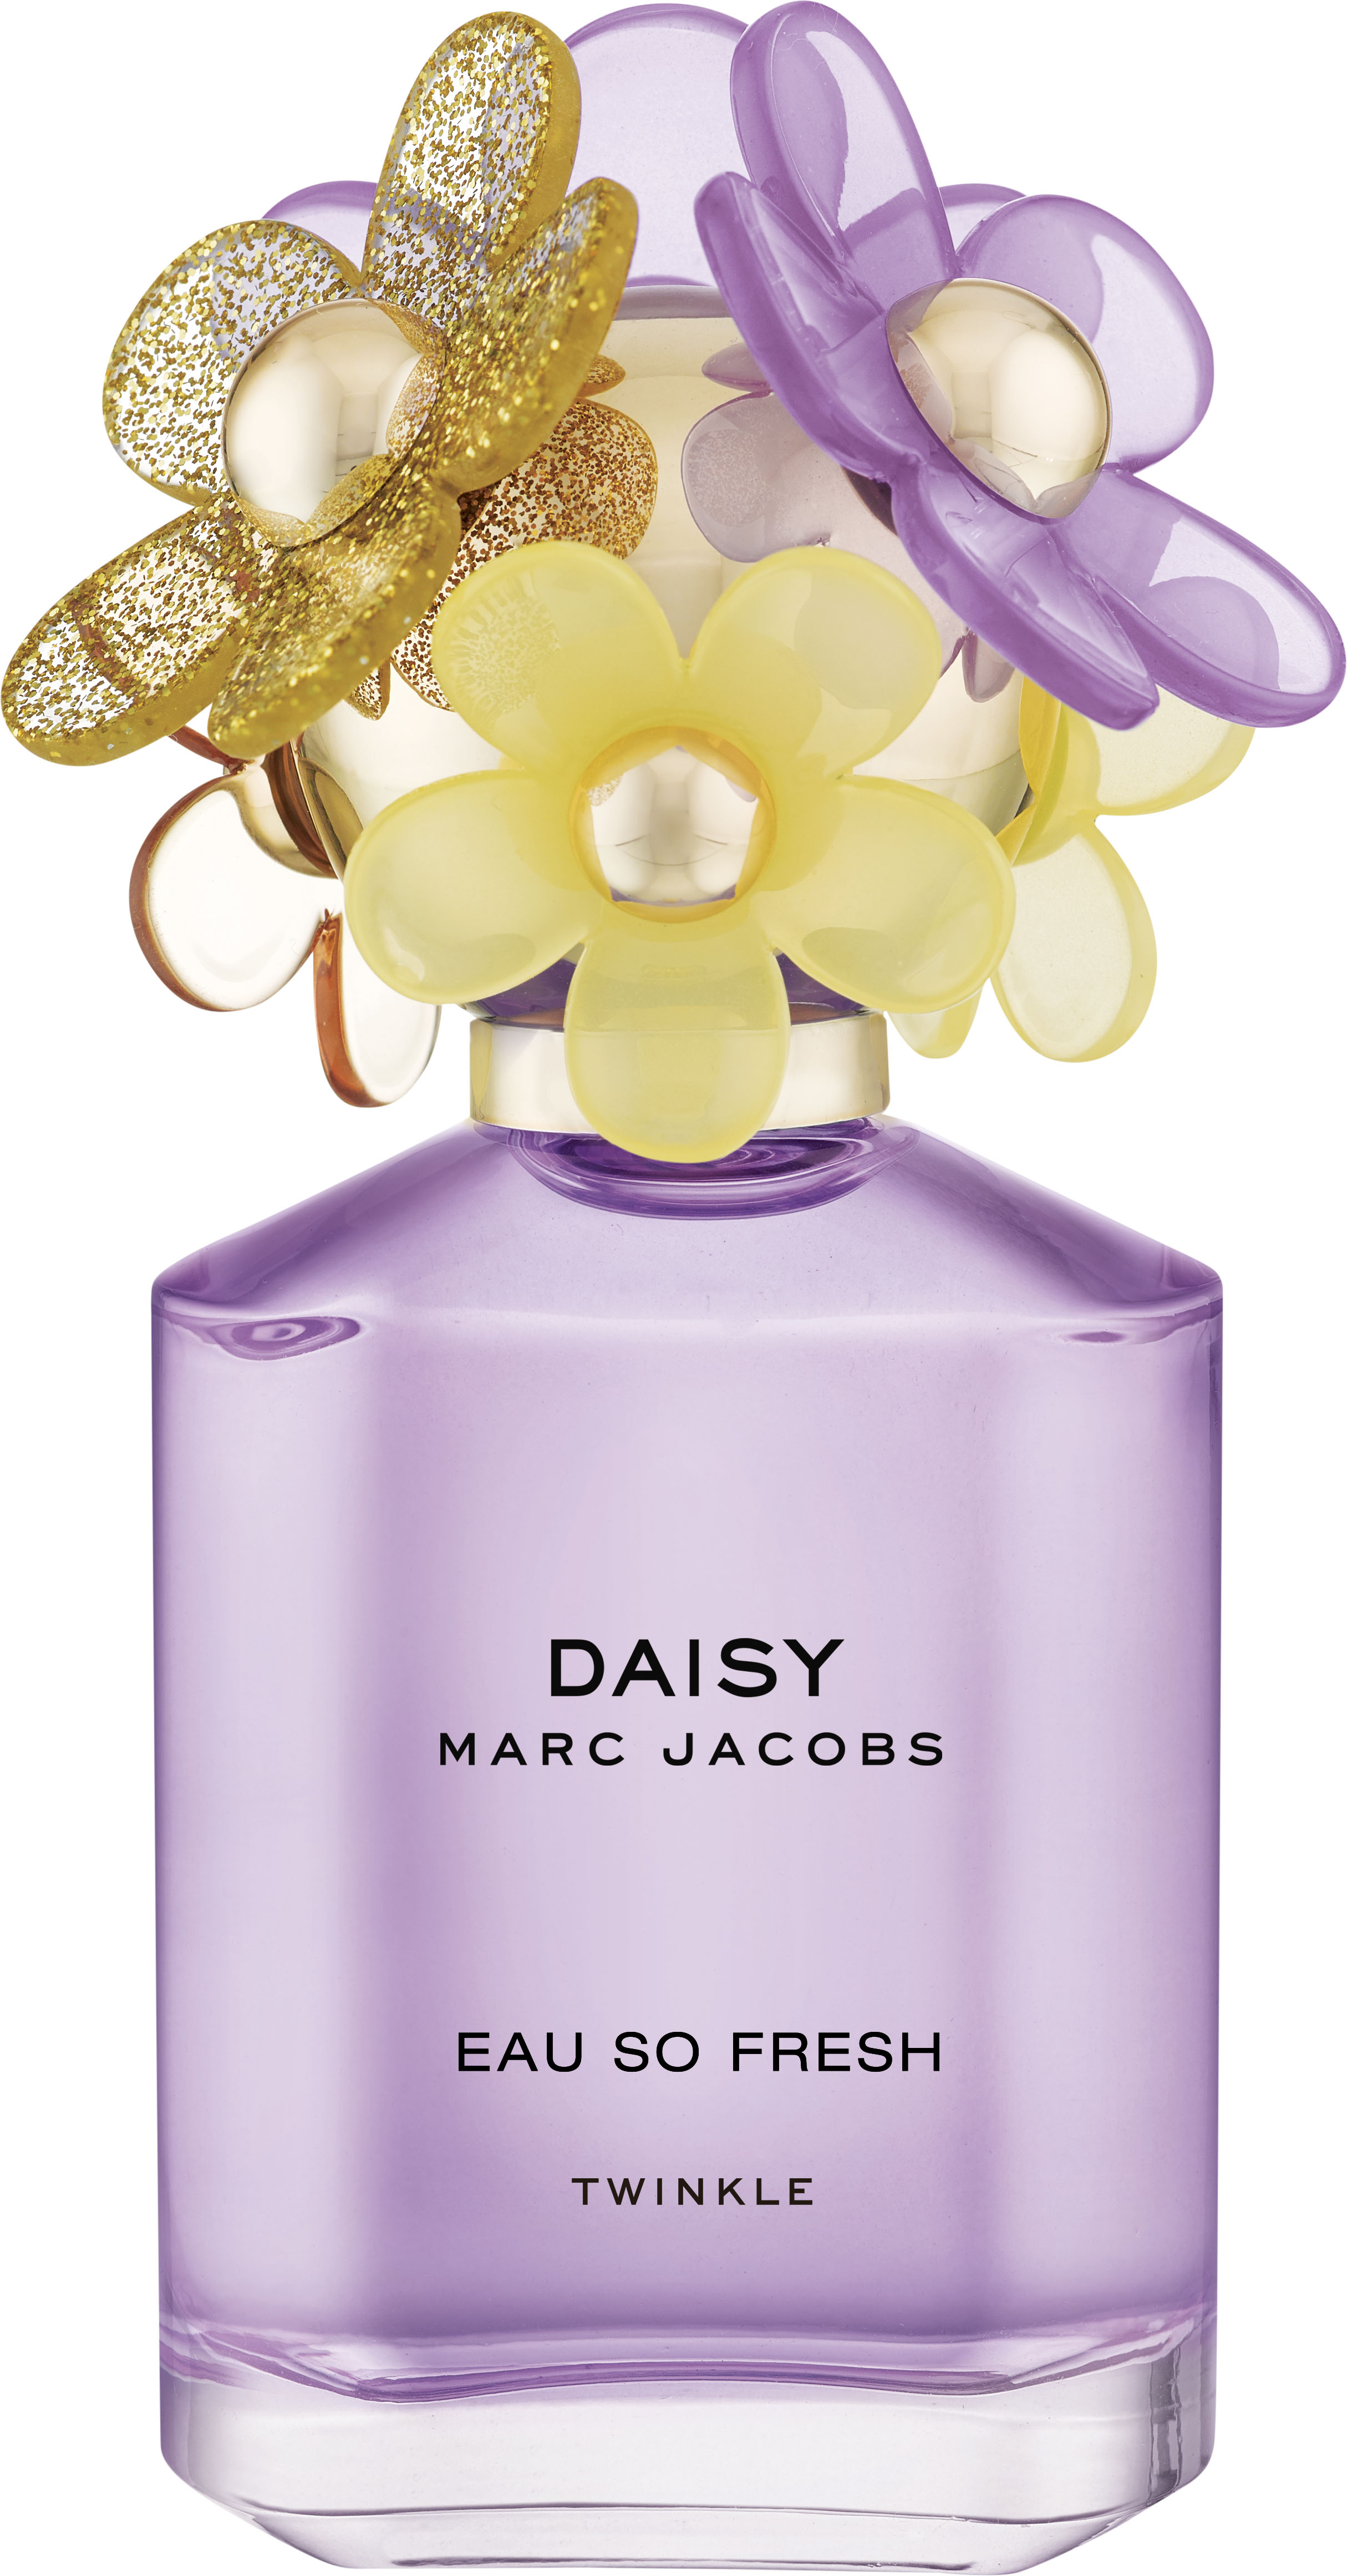 hjerne Fritagelse Strengt Køb Marc Jacobs - Daisy Eau So Fresh Twinkle EDT 75 ml